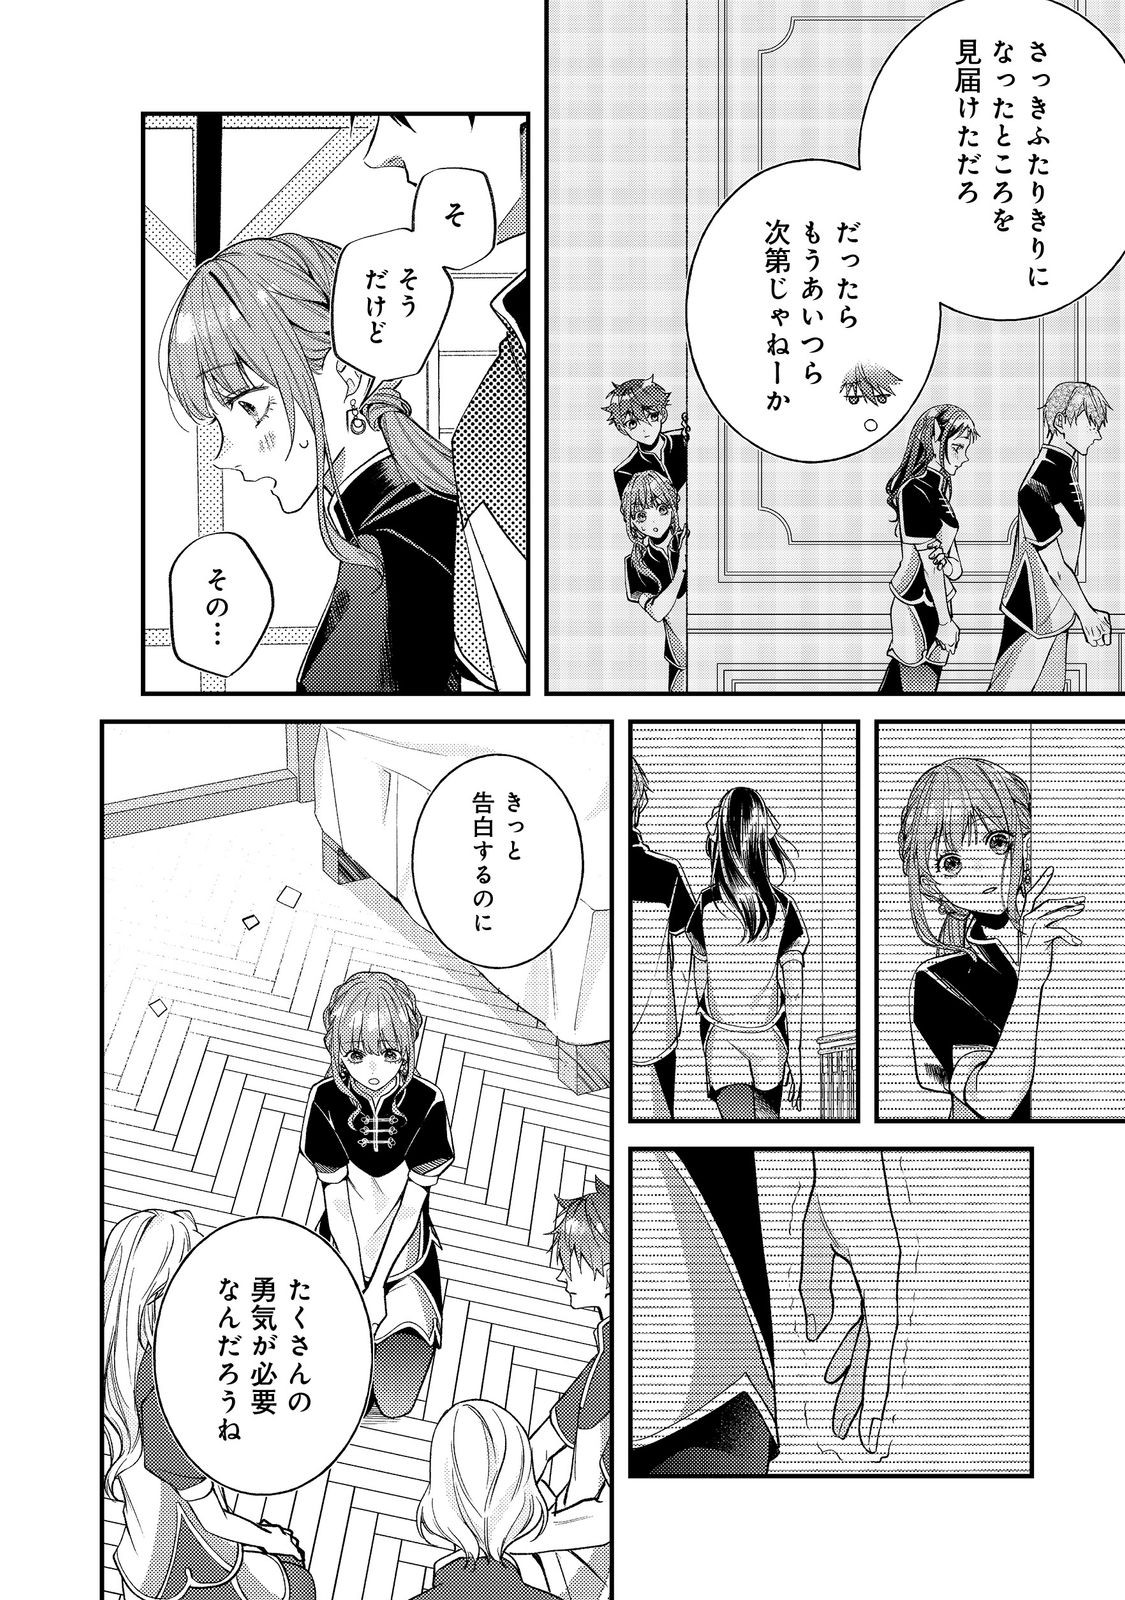 Bad End Mokuzen no Heroine ni Tensei shita Watashi, Konse de wa Renai suru Tsumori ga Cheat na Ani ga Hanashite kuremasen!? - Chapter 21 - Page 2